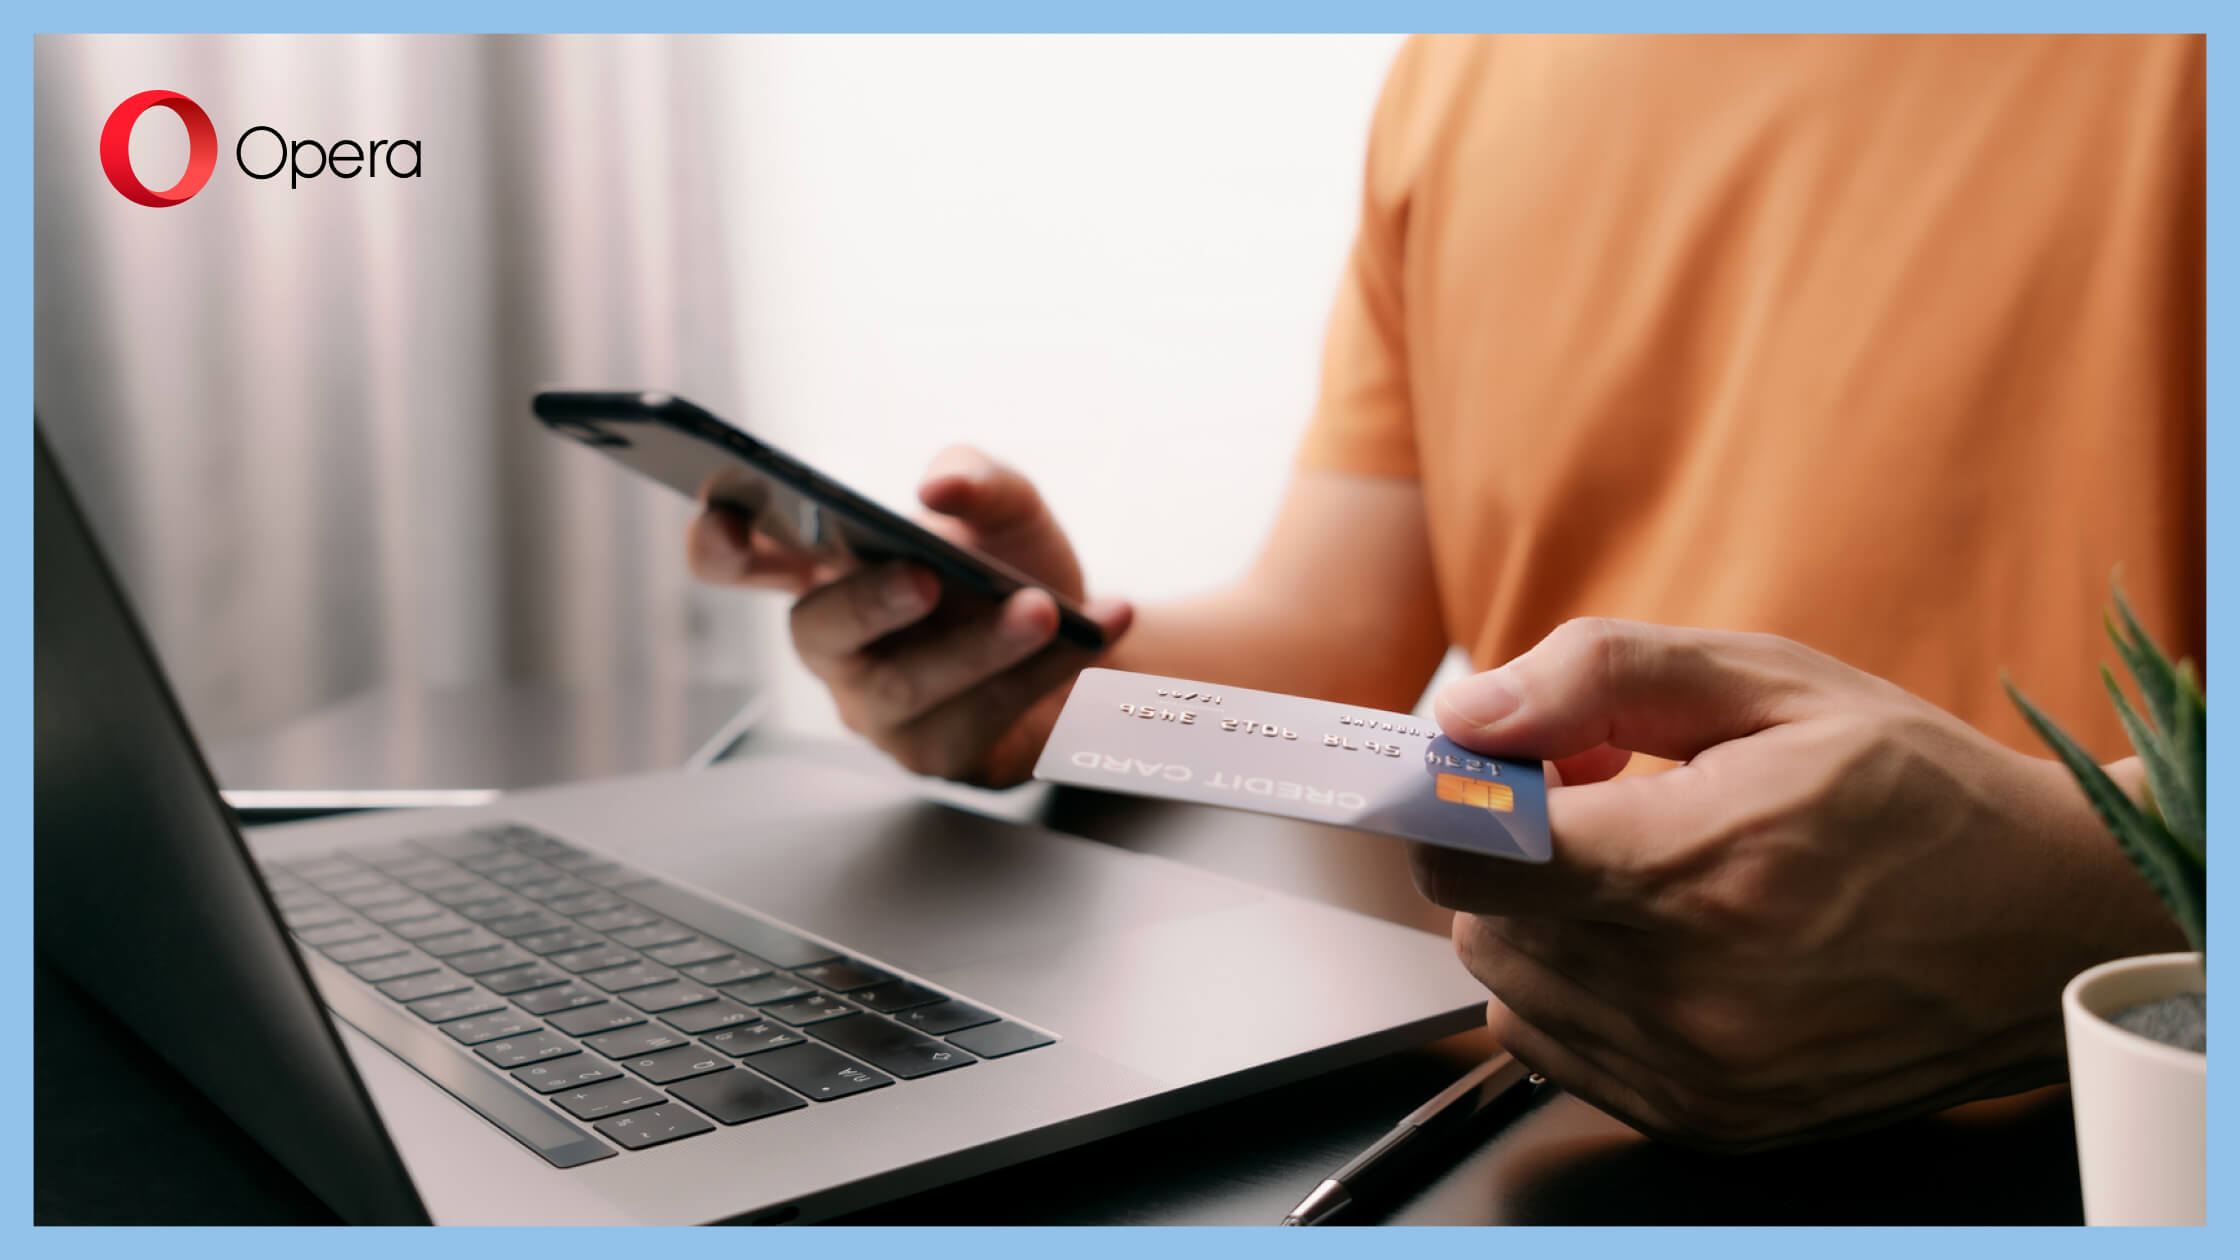 Insbesondere bei Kreditkartenzahlung im Internet ist auf Sicherheit zu achten